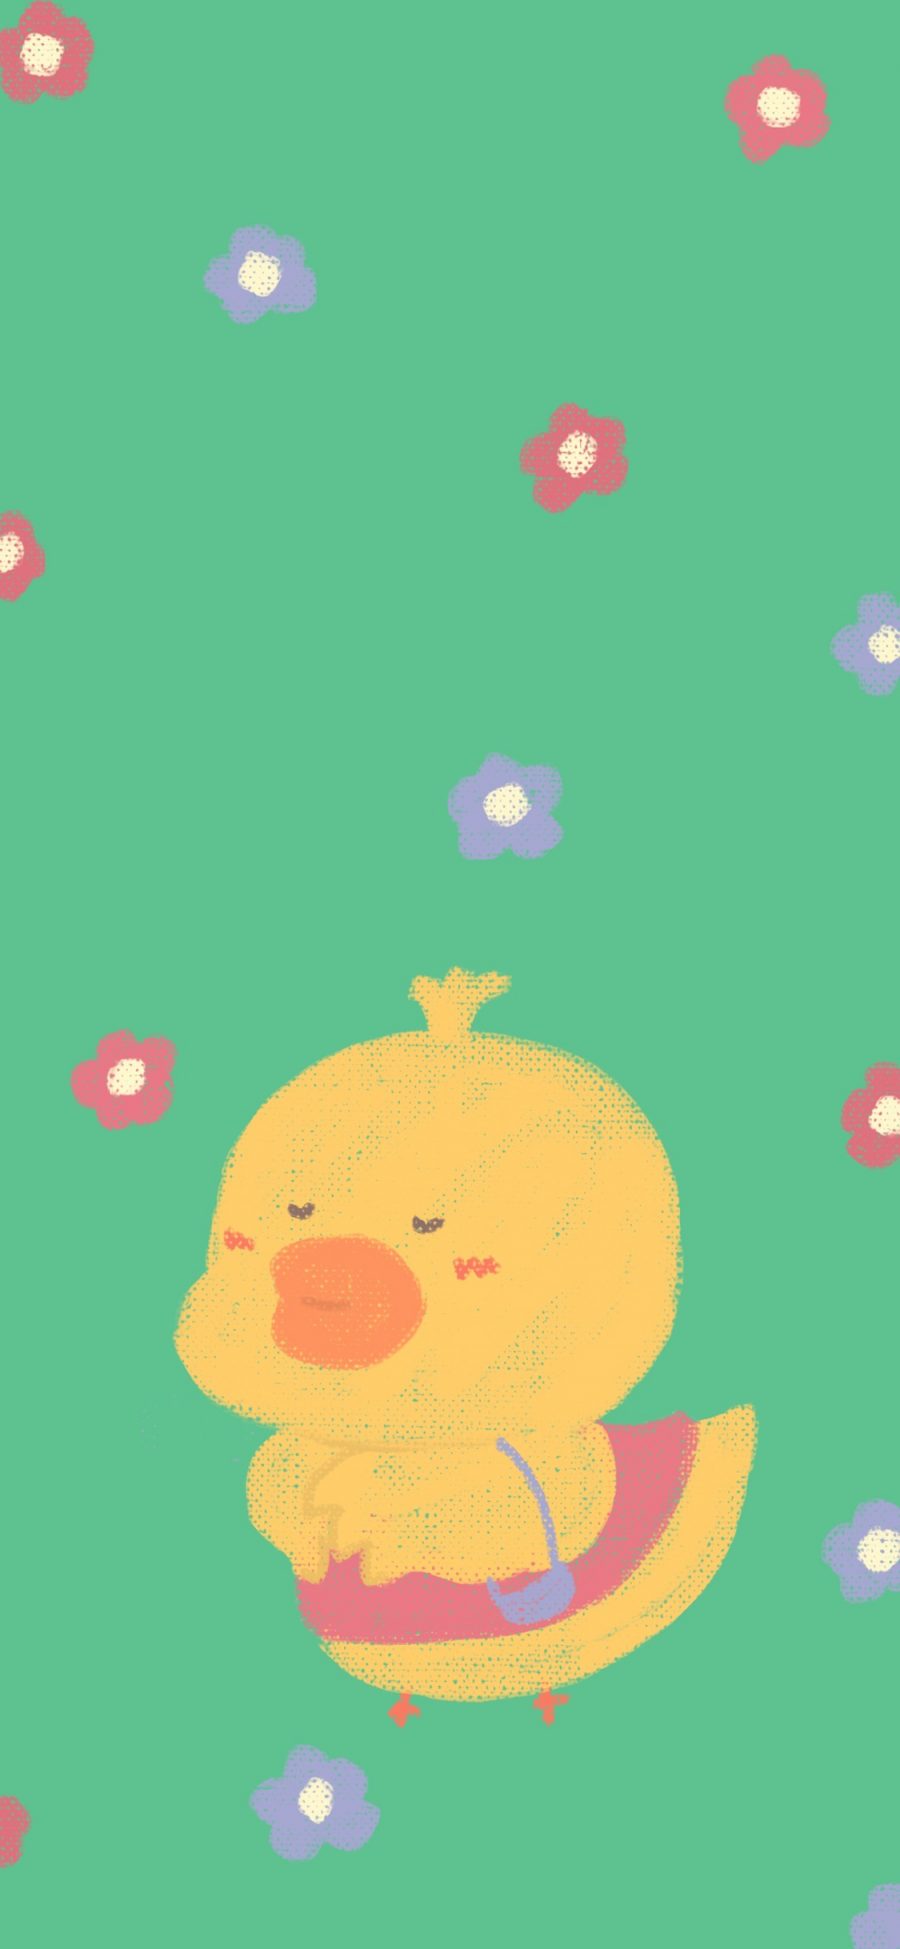 [2436×1125]小黄鸭 小花 彩绘 苹果手机动漫壁纸图片